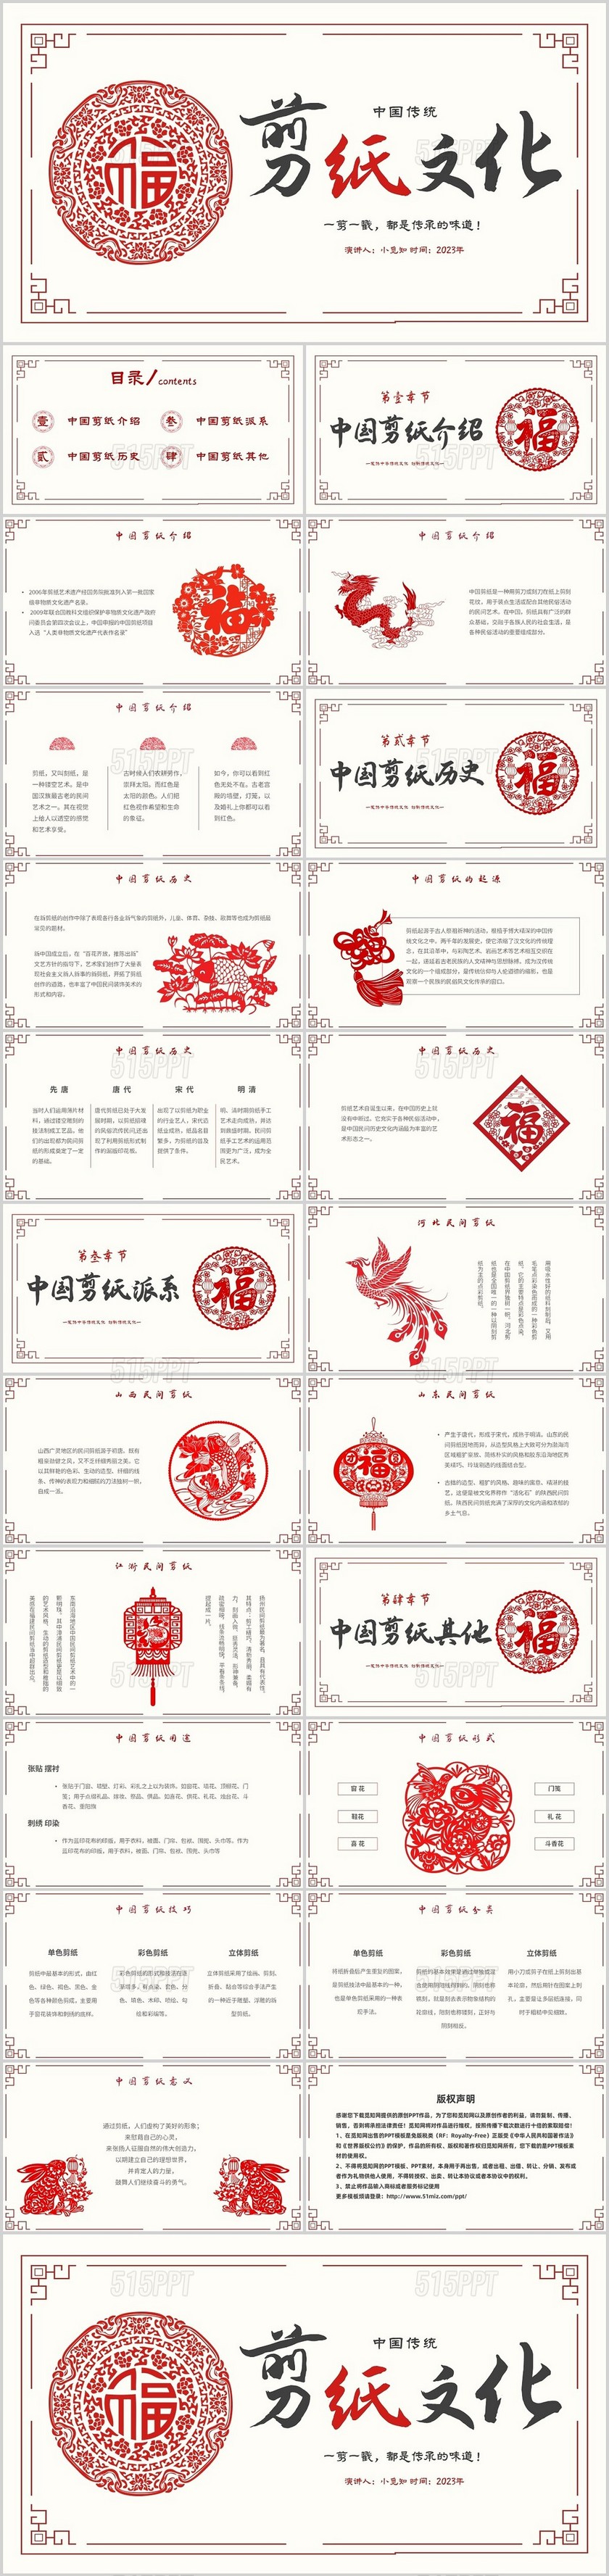 简约中国剪纸文化发扬中华传统文化创新传统文化主题PPT模板中国剪纸艺术